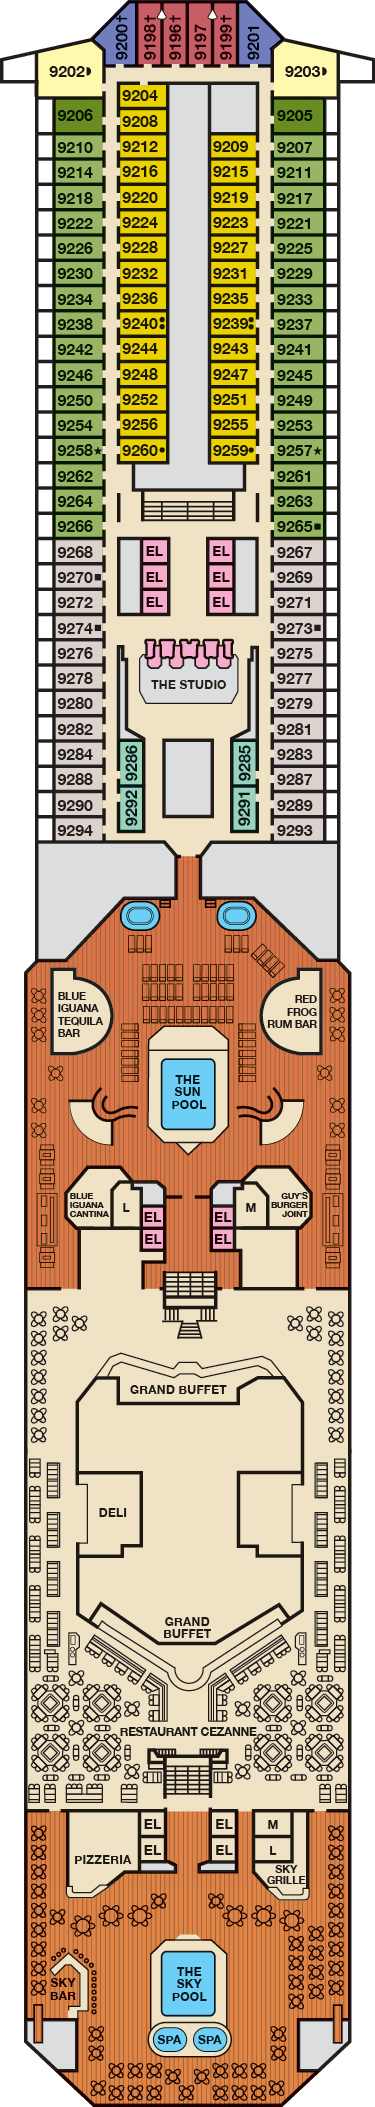 Lido Deck Plan